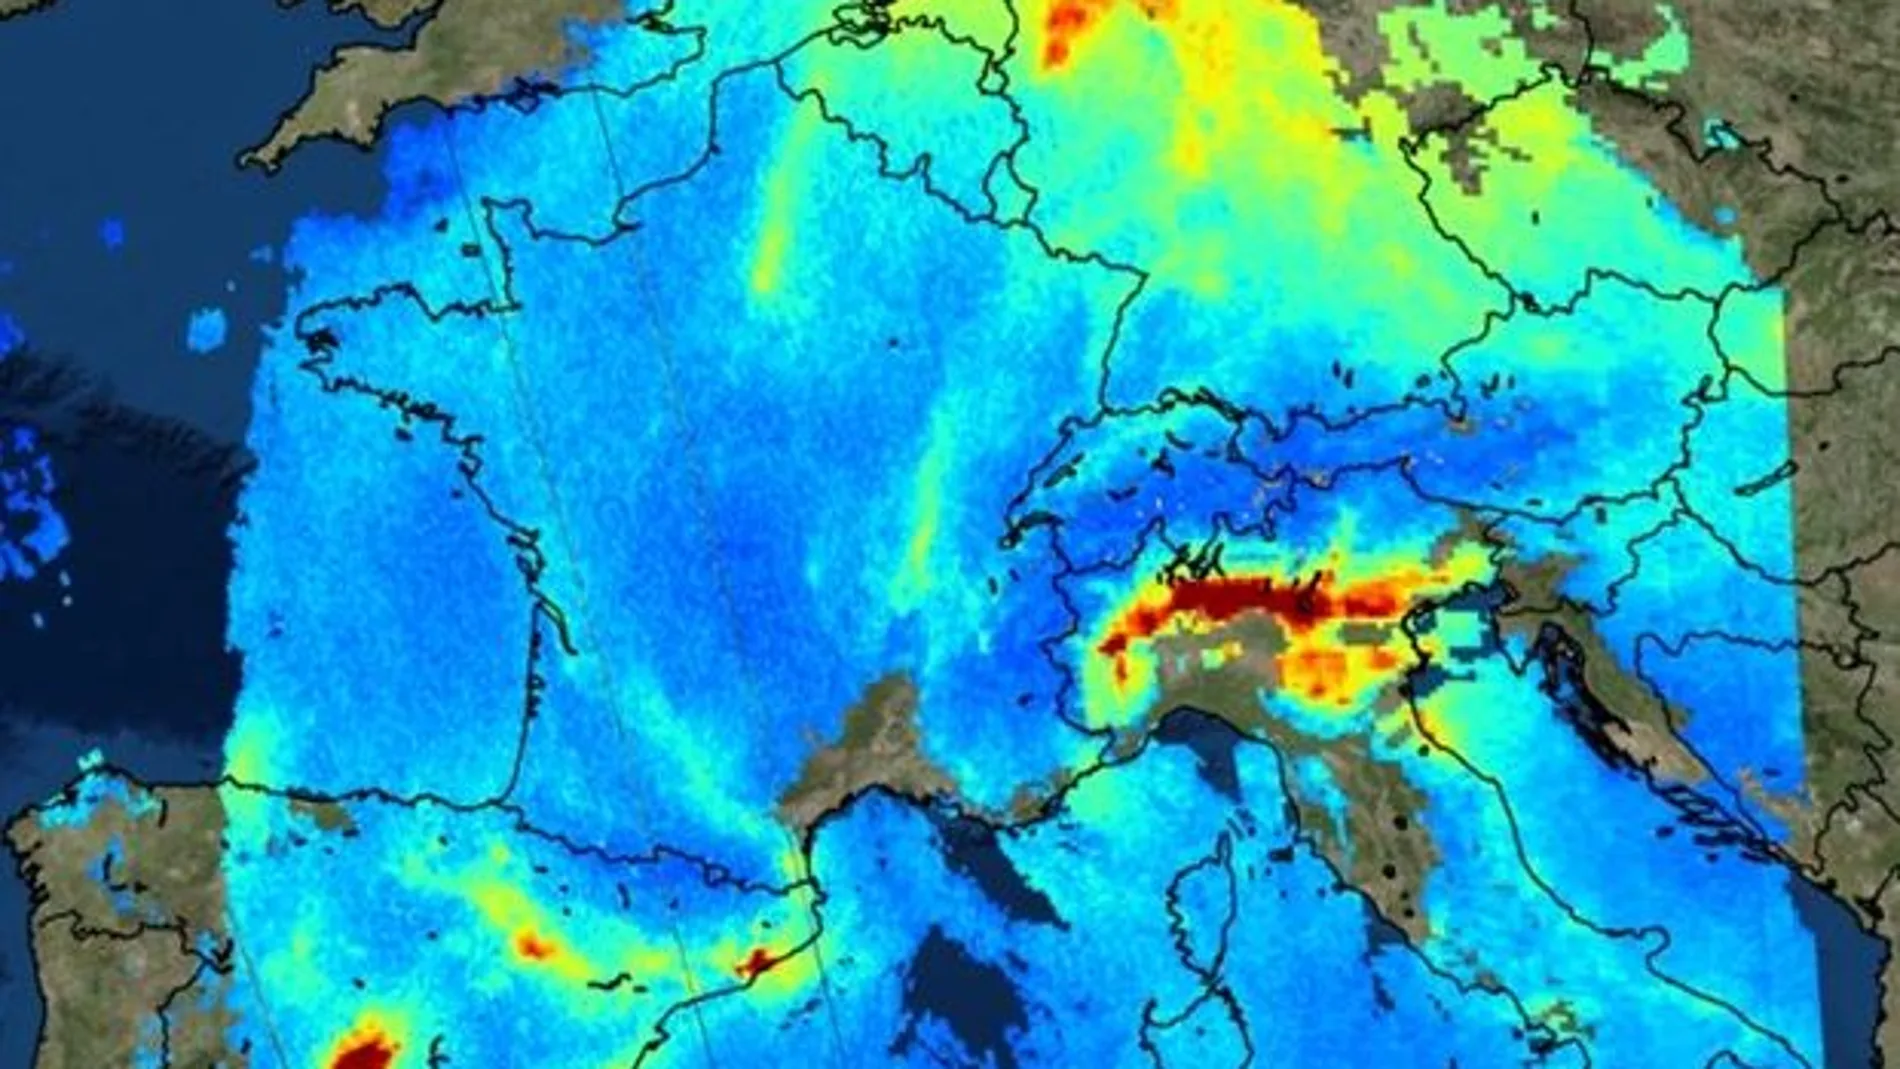 La contaminación, vista desde el espacio a través de las imágenes de un satélite